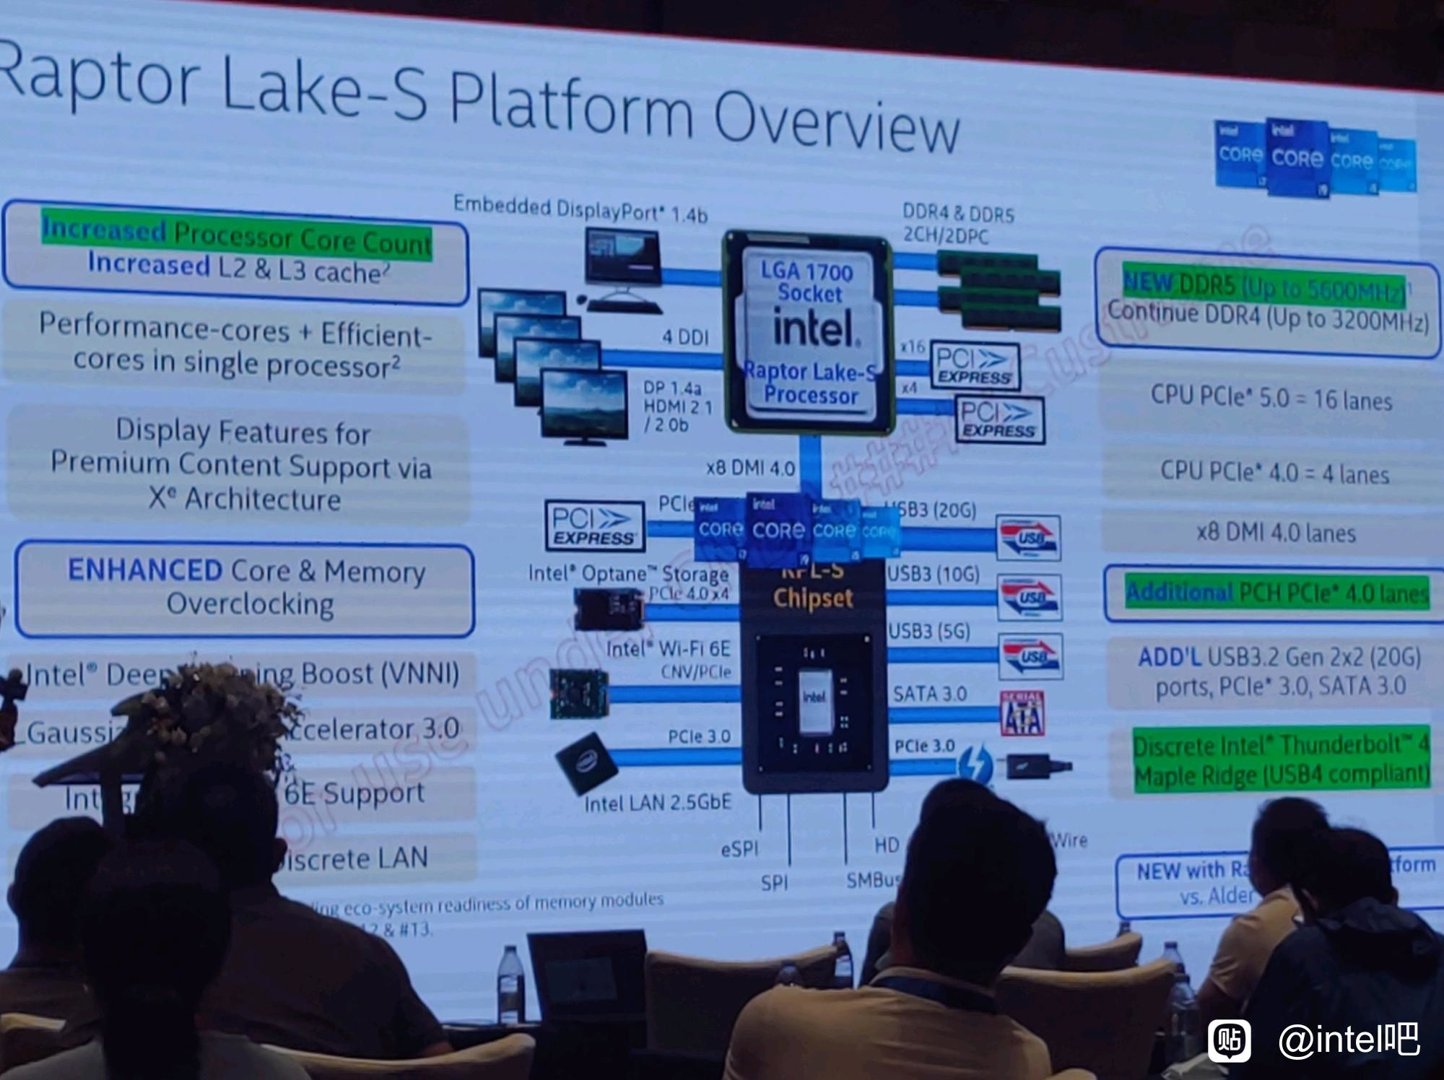 Una diapositiva filtrada que muestra información sobre el procesador Intel Raptor Lake-S